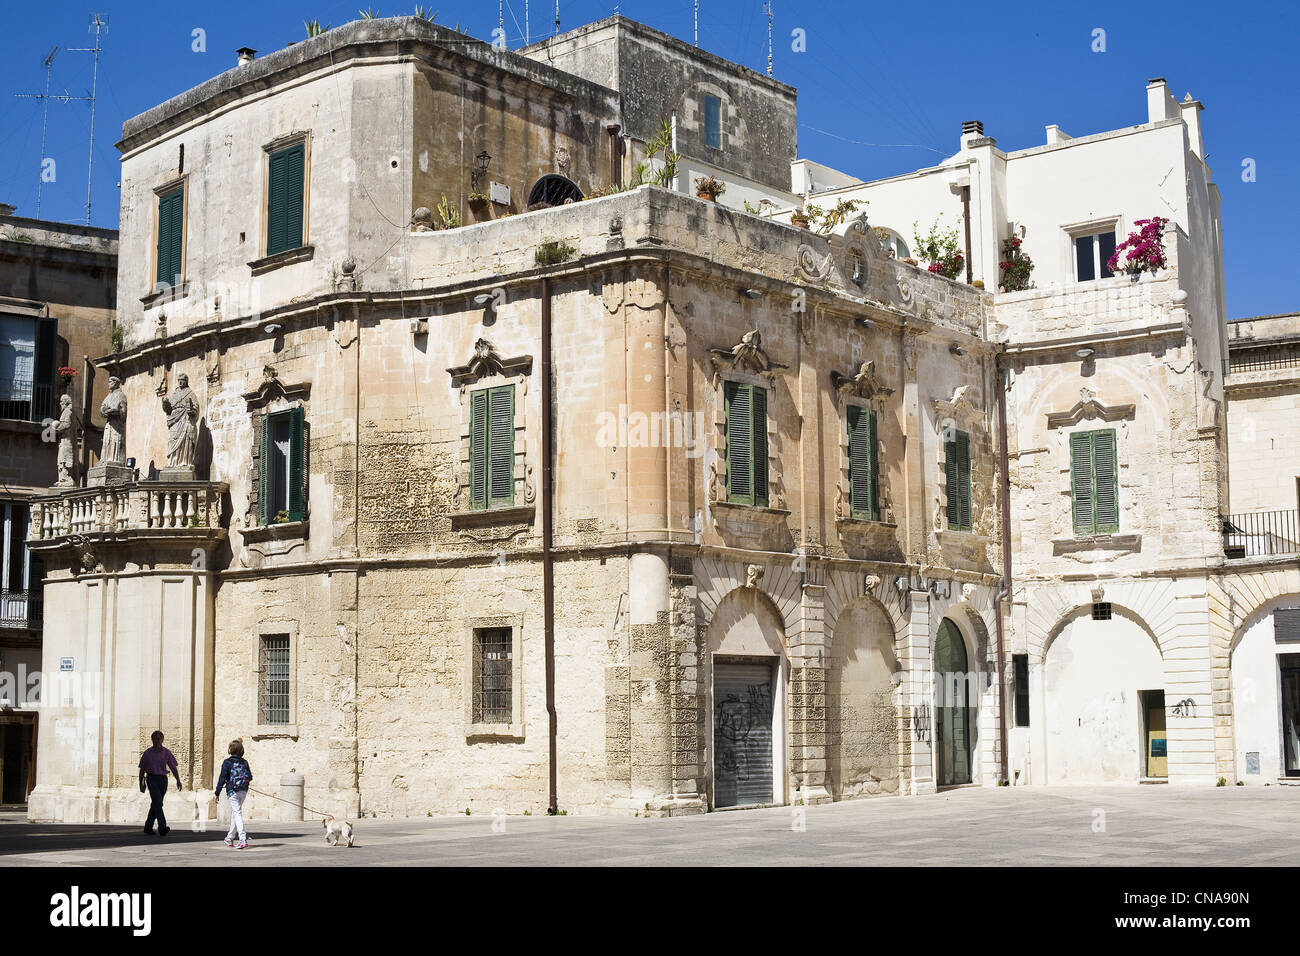 Italien, Apulien, Lecce, Duomo Platz, am Eingang des Domplatzes Gebäude aus dem 17. Jahrhundert Stockfoto